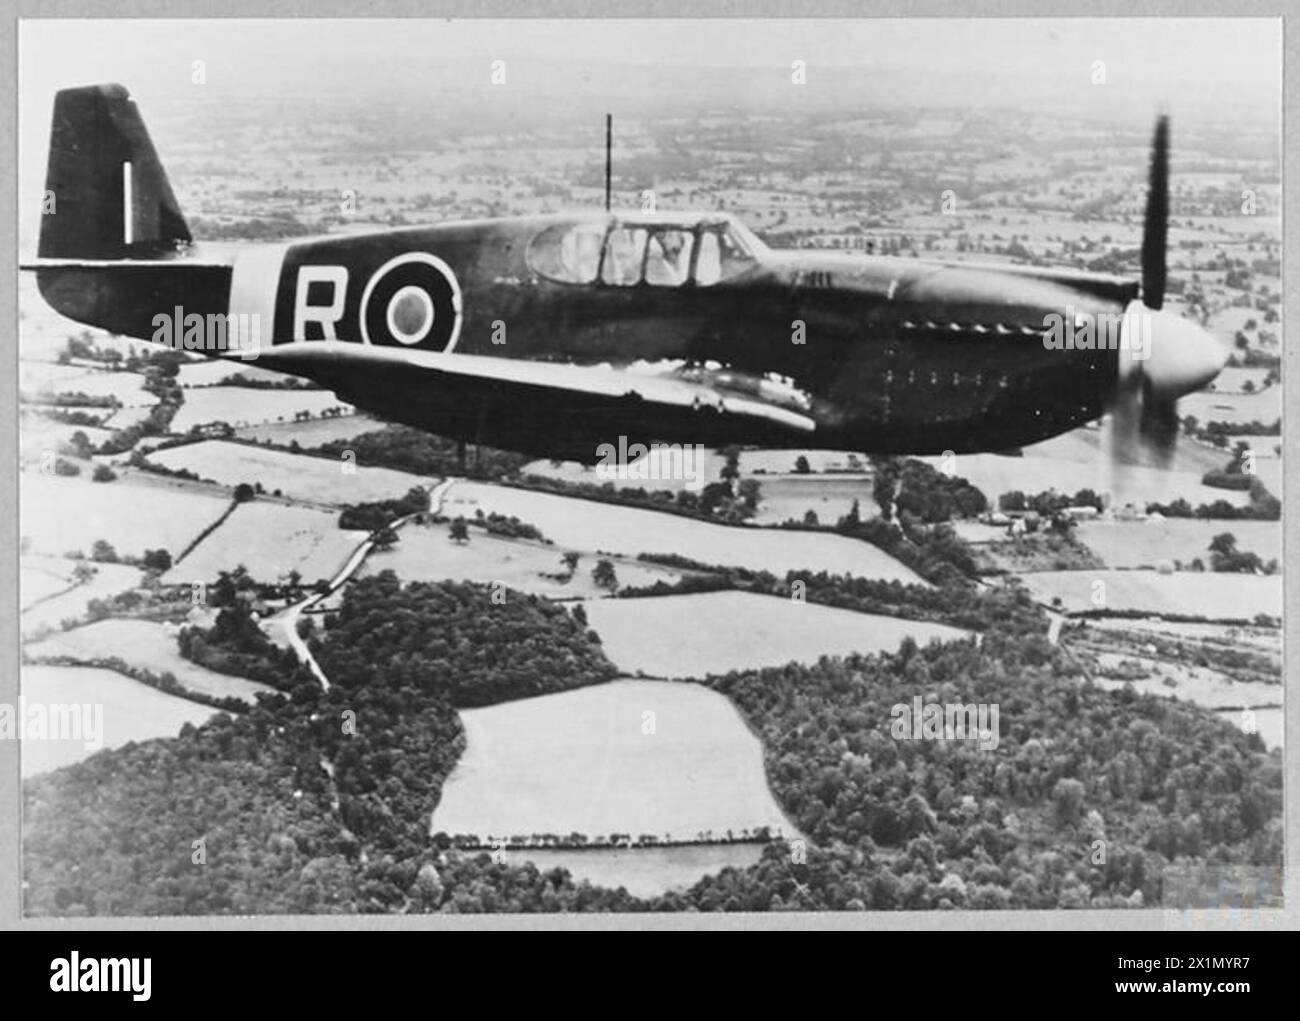 Un AVION MUSTANG EN VOL - L'avion Mustang montré ici est utilisé pour la reconnaissance photographique. Photo publiée en 1943, Royal Air Force Banque D'Images